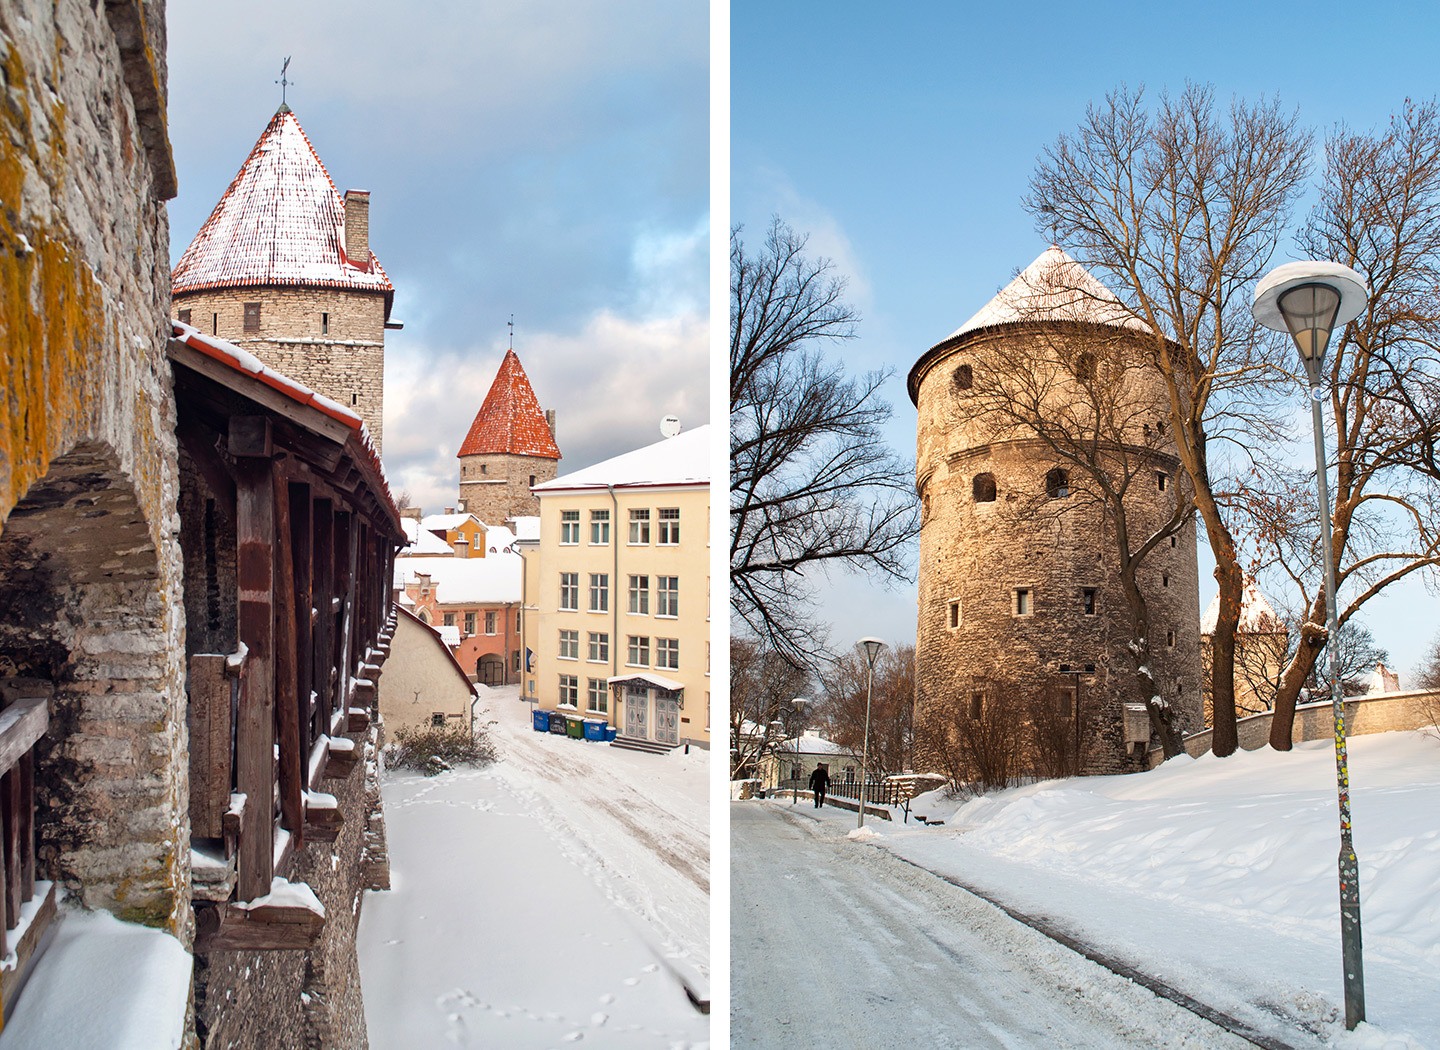 Tallinn city walls